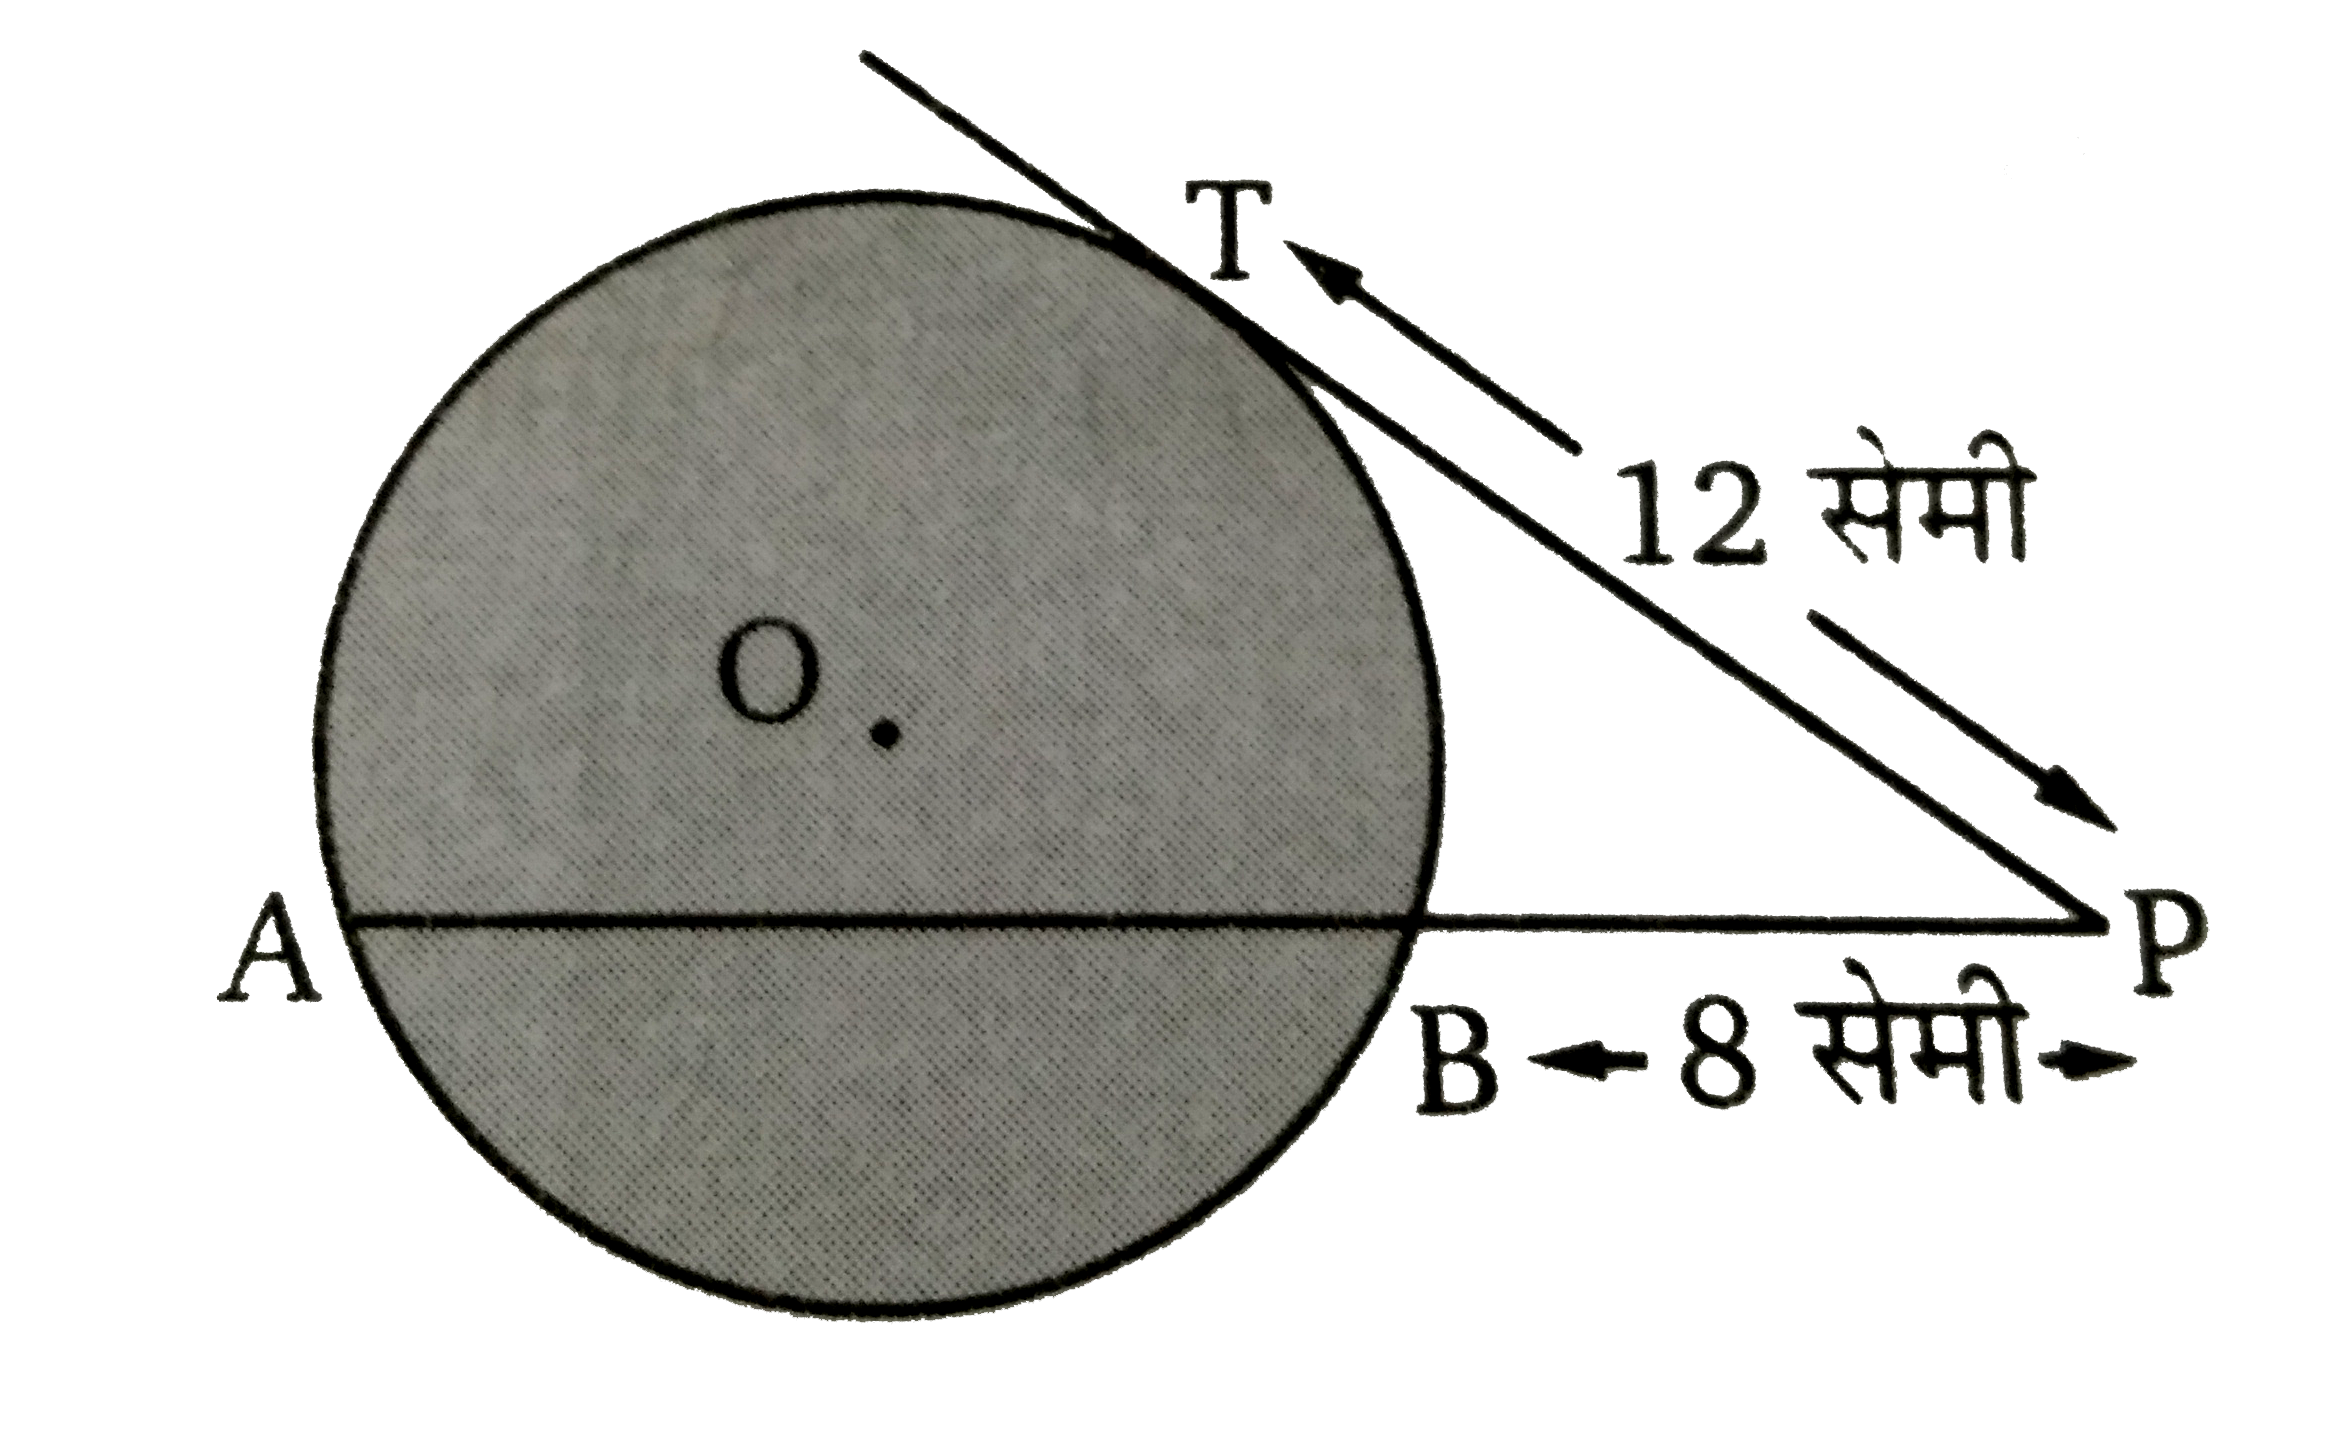 चित्र में PT  एक स्पर्शी  है। यदि PT = 12  सेमी तथा PB = 8  सेमी तब जीवा  की लम्बाई ज्ञात कीजिए ।